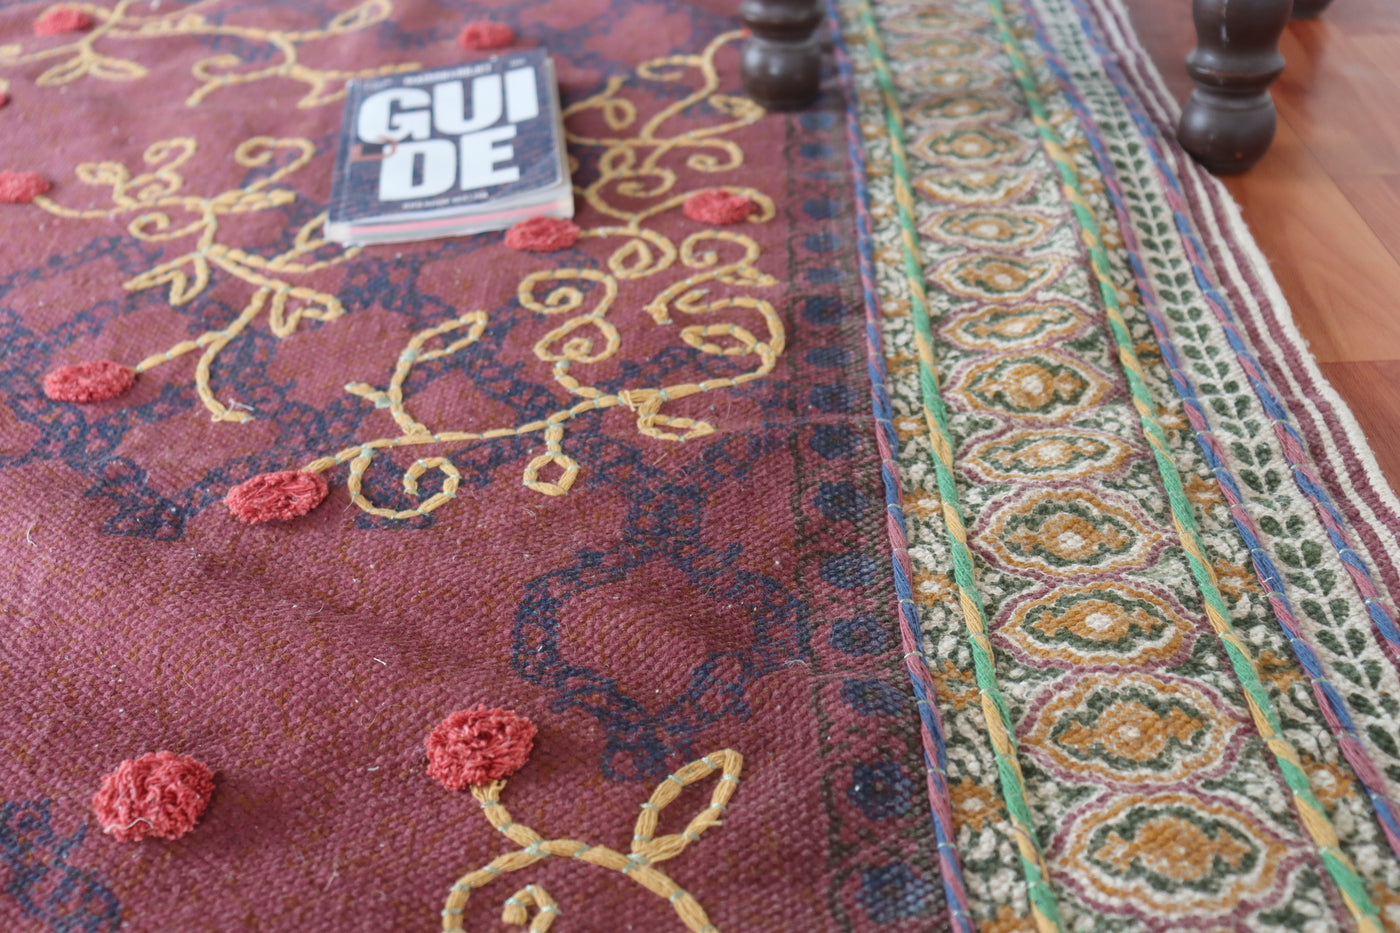 Vintage rug, floral designer embroidered rug, indian dhurrie rug, , 2x3, 3x5, 4x6 feet